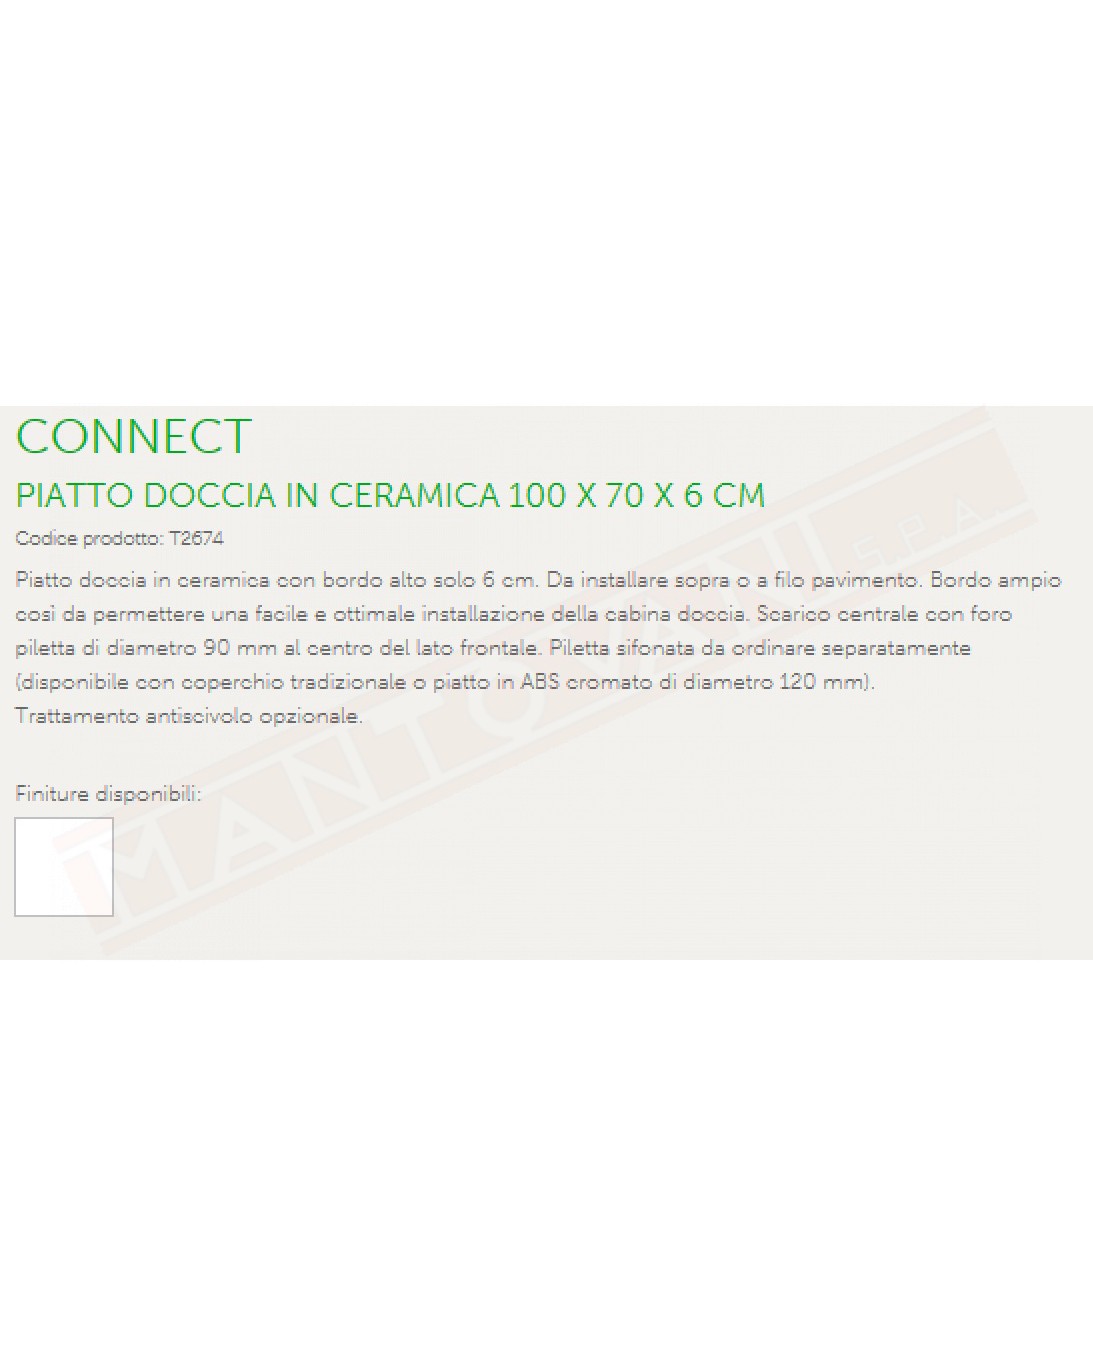 IDEAL STANDARD PIATTO DOCCIA CONNECT 100X70 BEU SCARICO FRONTALE